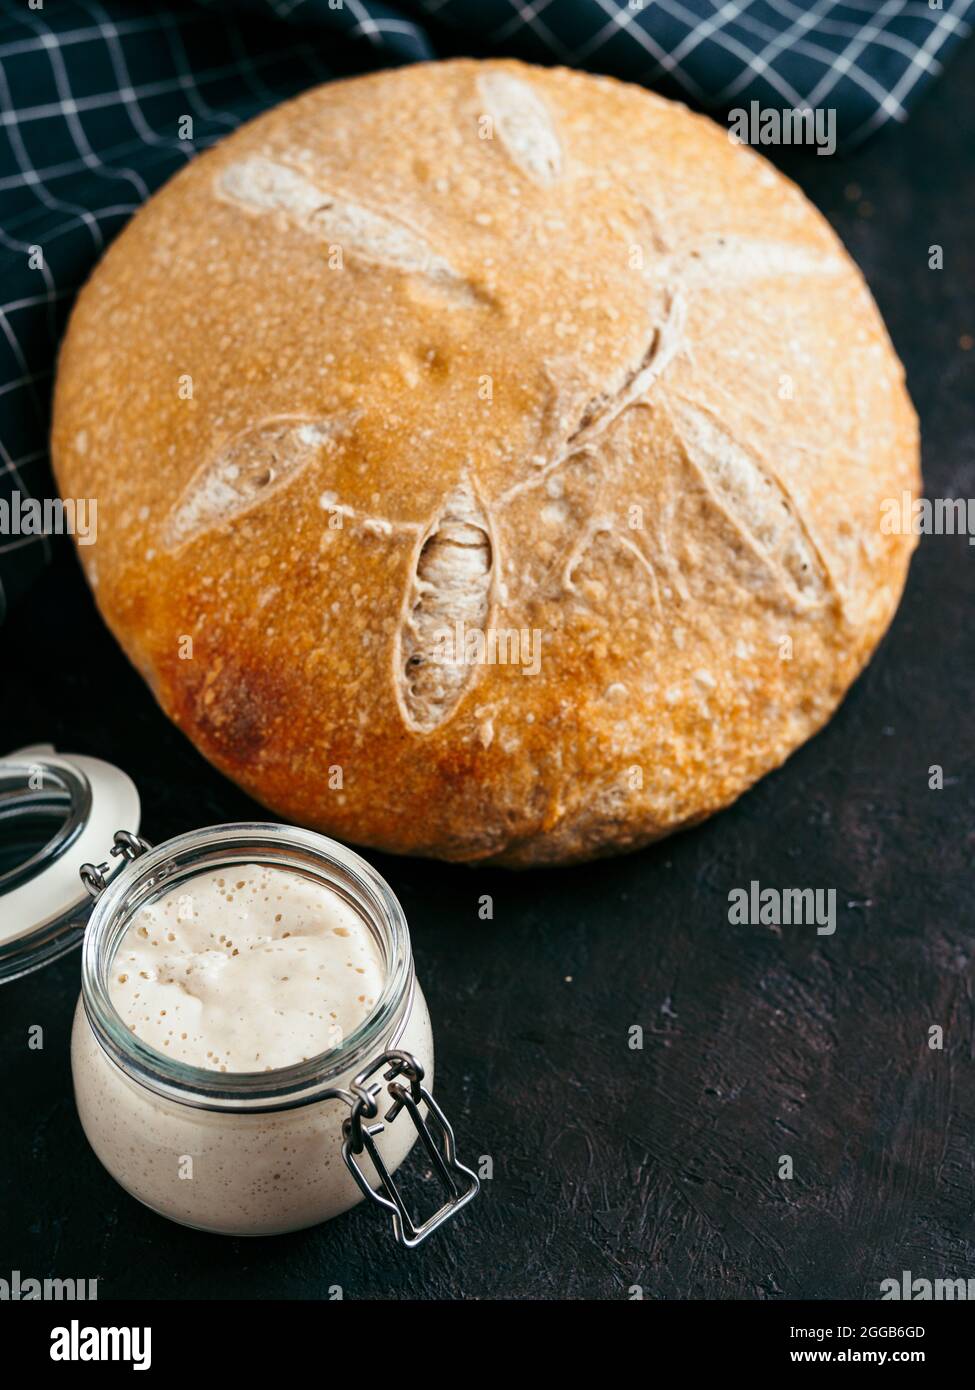 Sauerteig-Vorspeise und Weizensauerteig-Brot. Weizensaurer Teigstarter im Glasgefäß und hausgemachtes rundes Sauerteigbrot auf schwarzem Hintergrund, Kopierraum. Hausgemachter Sauerteig Brot machen Konzept Vertikal. Stockfoto